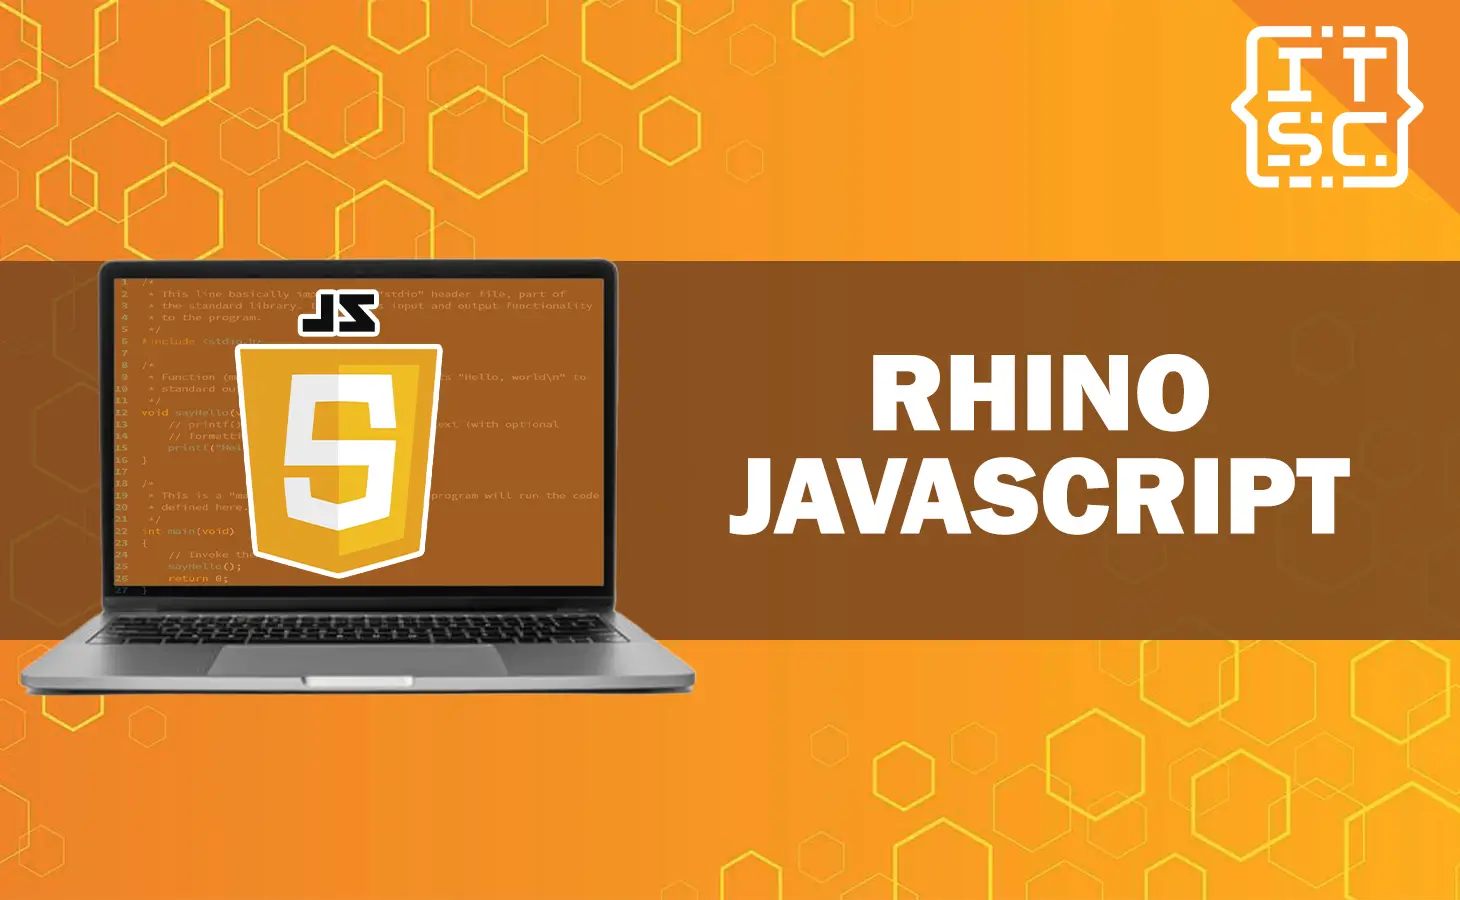 Rhino JavaScript